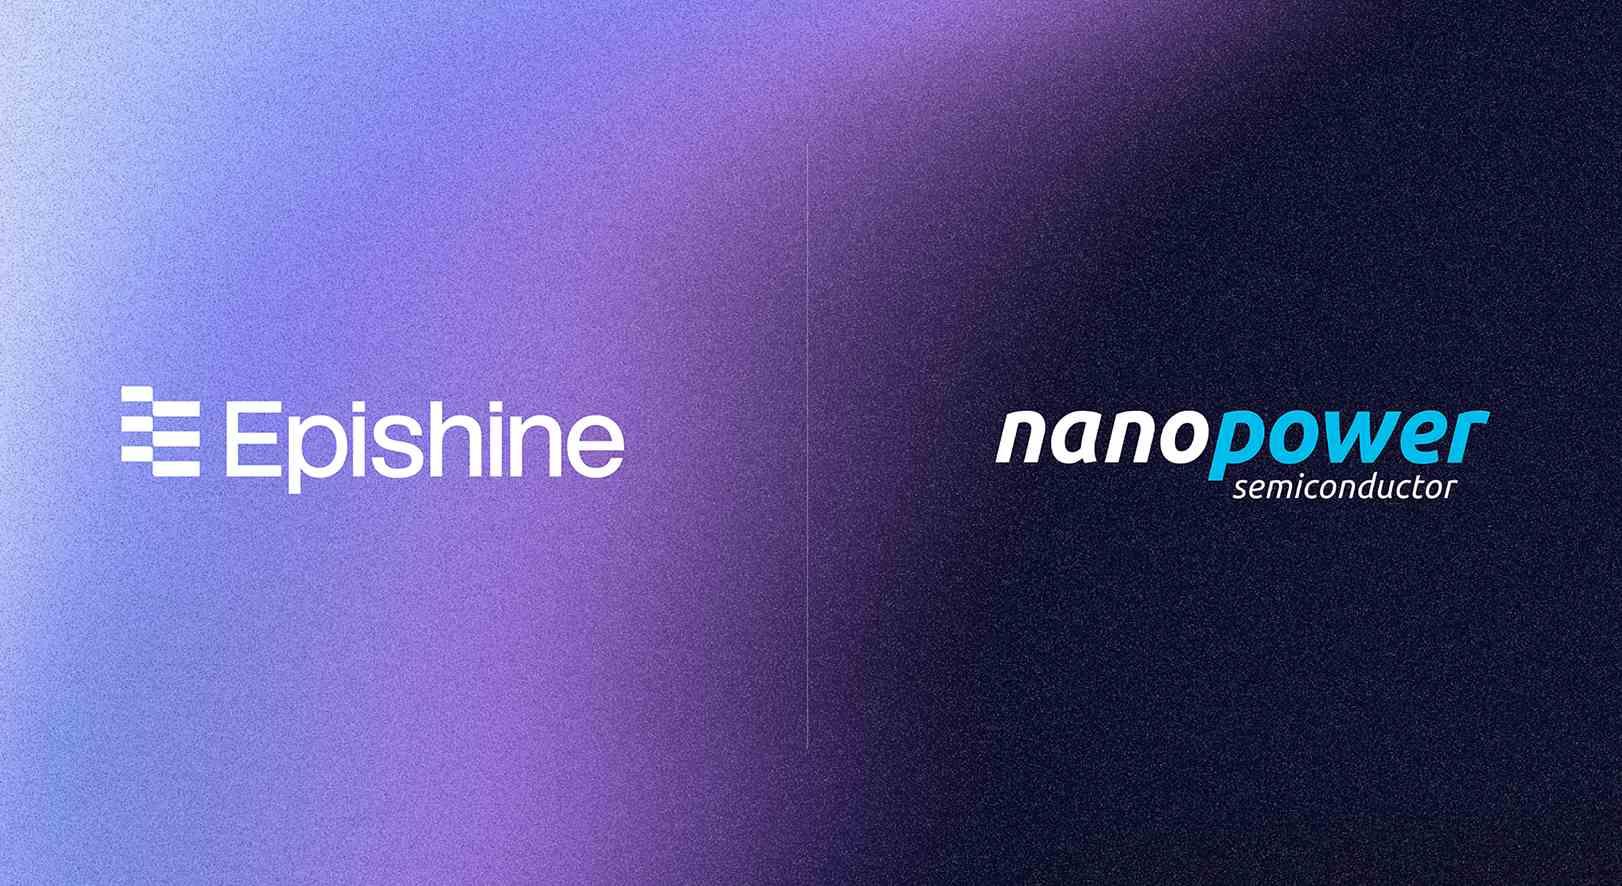 Company logos of Epishine and Nanopower